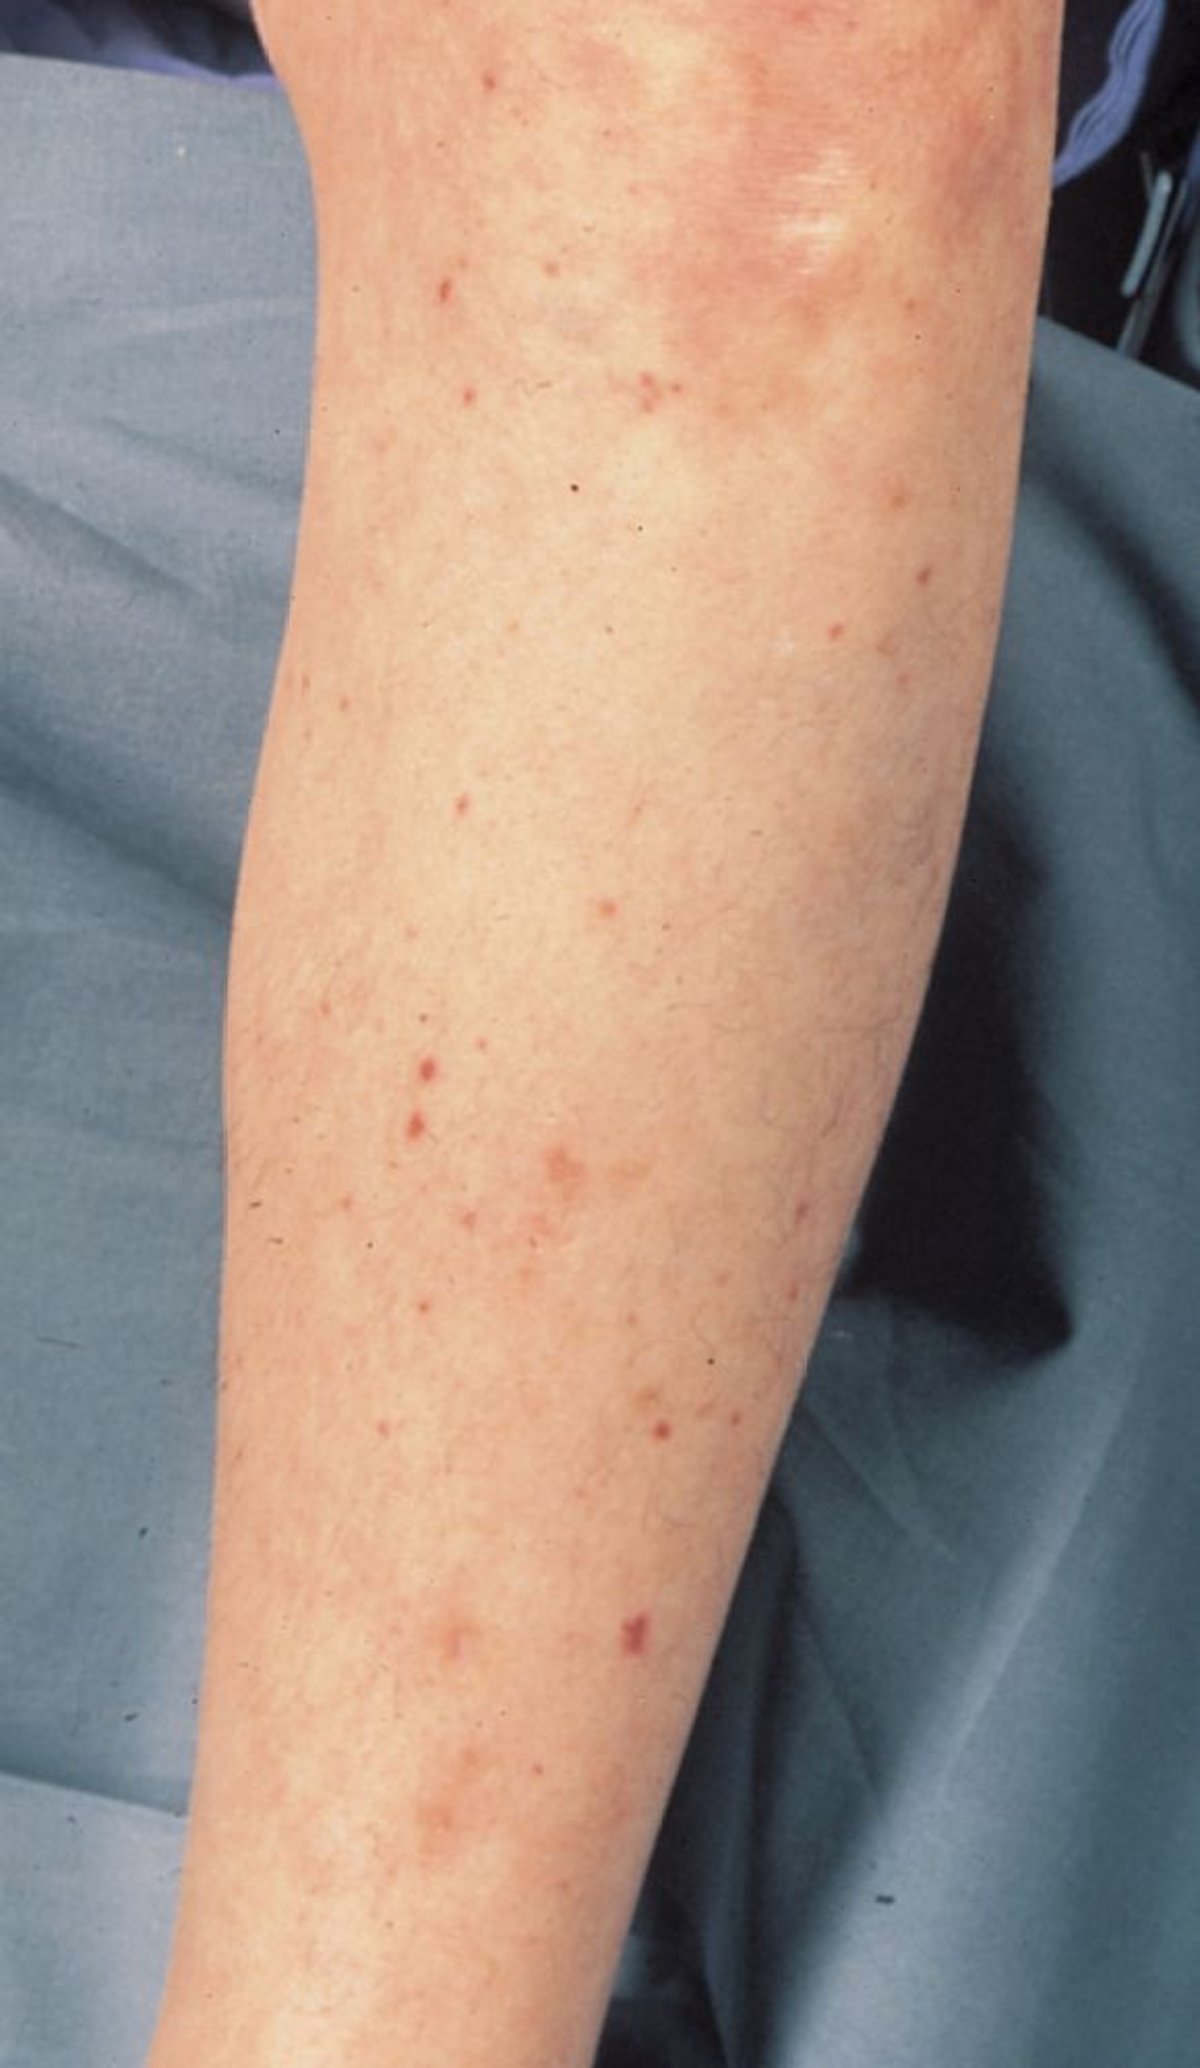 Hautausschlag infolge einer Infektion im Blutkreislauf durch Meningokokken